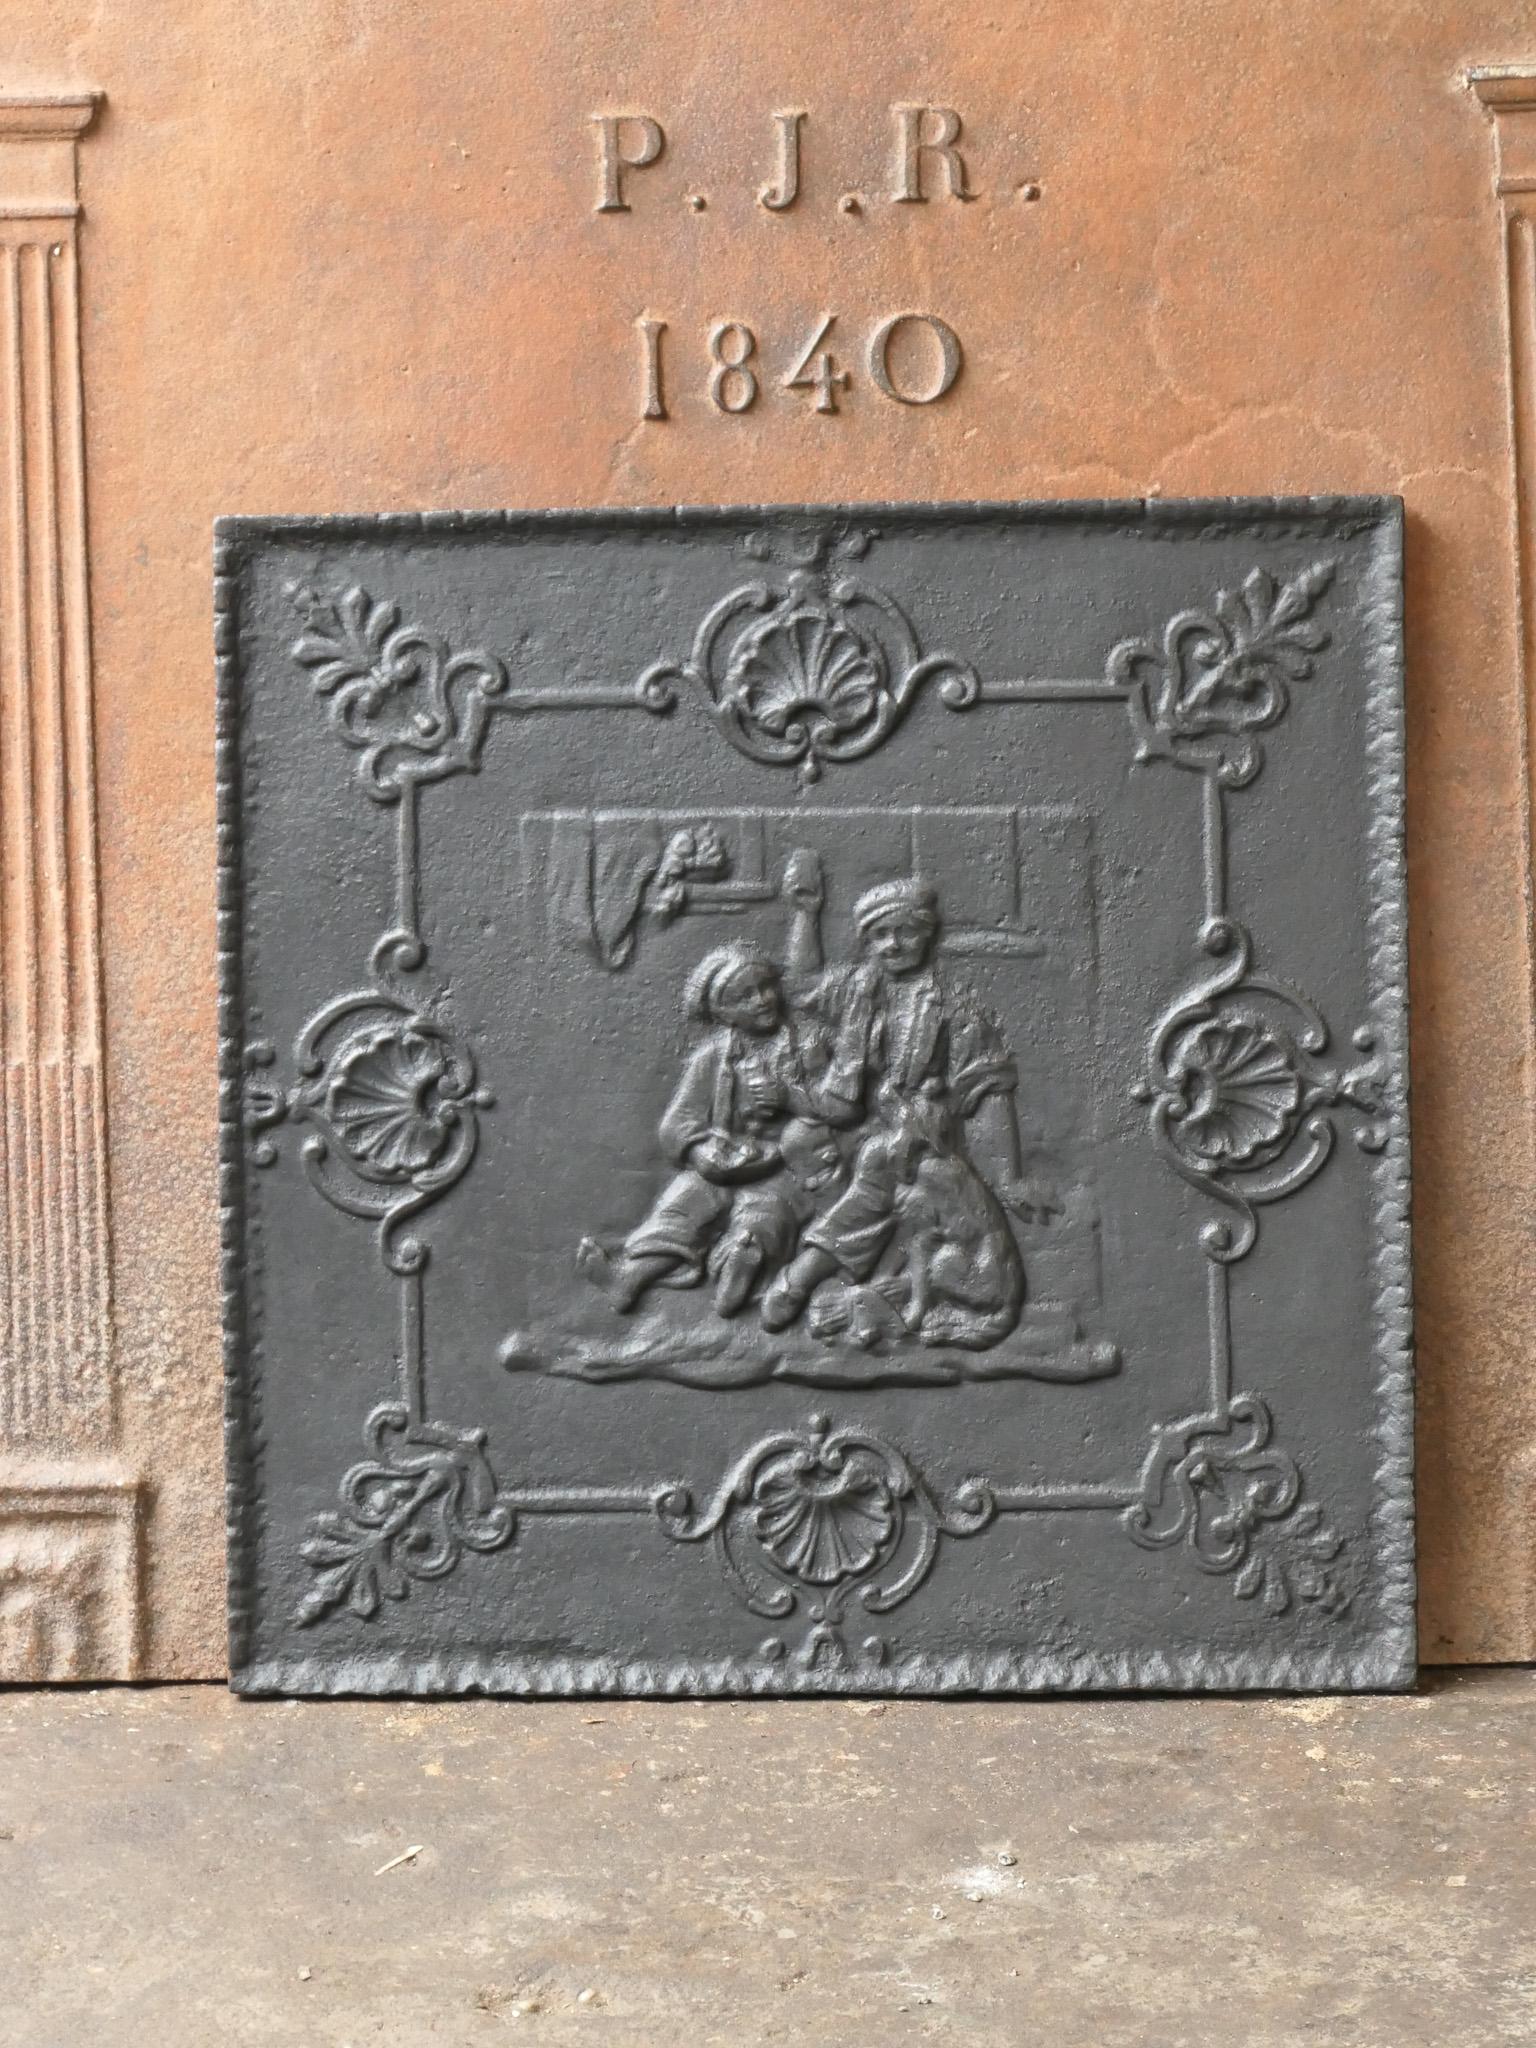 Plaque de cheminée française Napoléon III du XIXe siècle avec une scène de pub.

La plaque de cheminée est en fonte et a une patine noire/étain. Il est en bon état et ne présente pas de fissures.